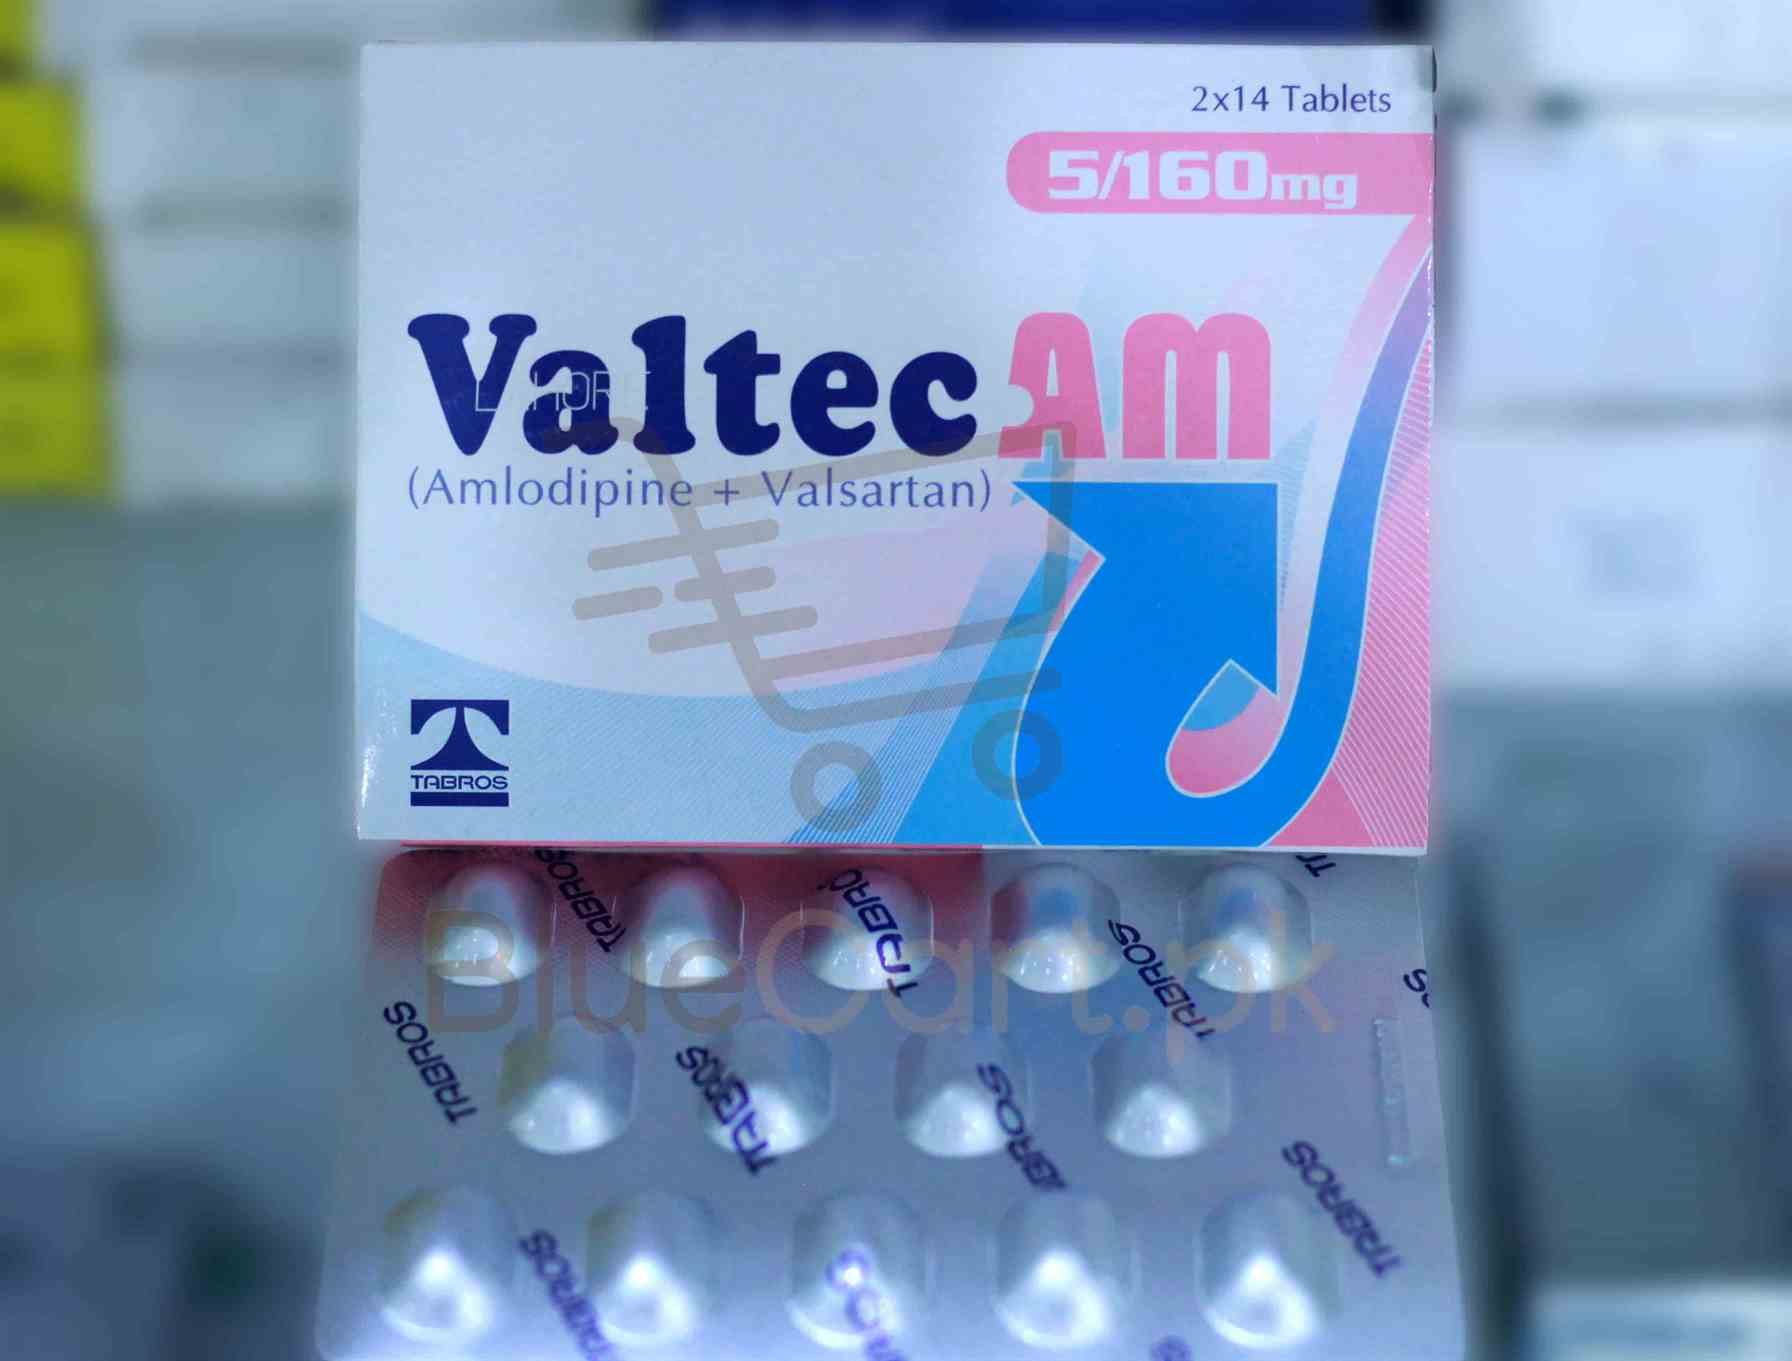 Valtec Am Tablet 5-160mg